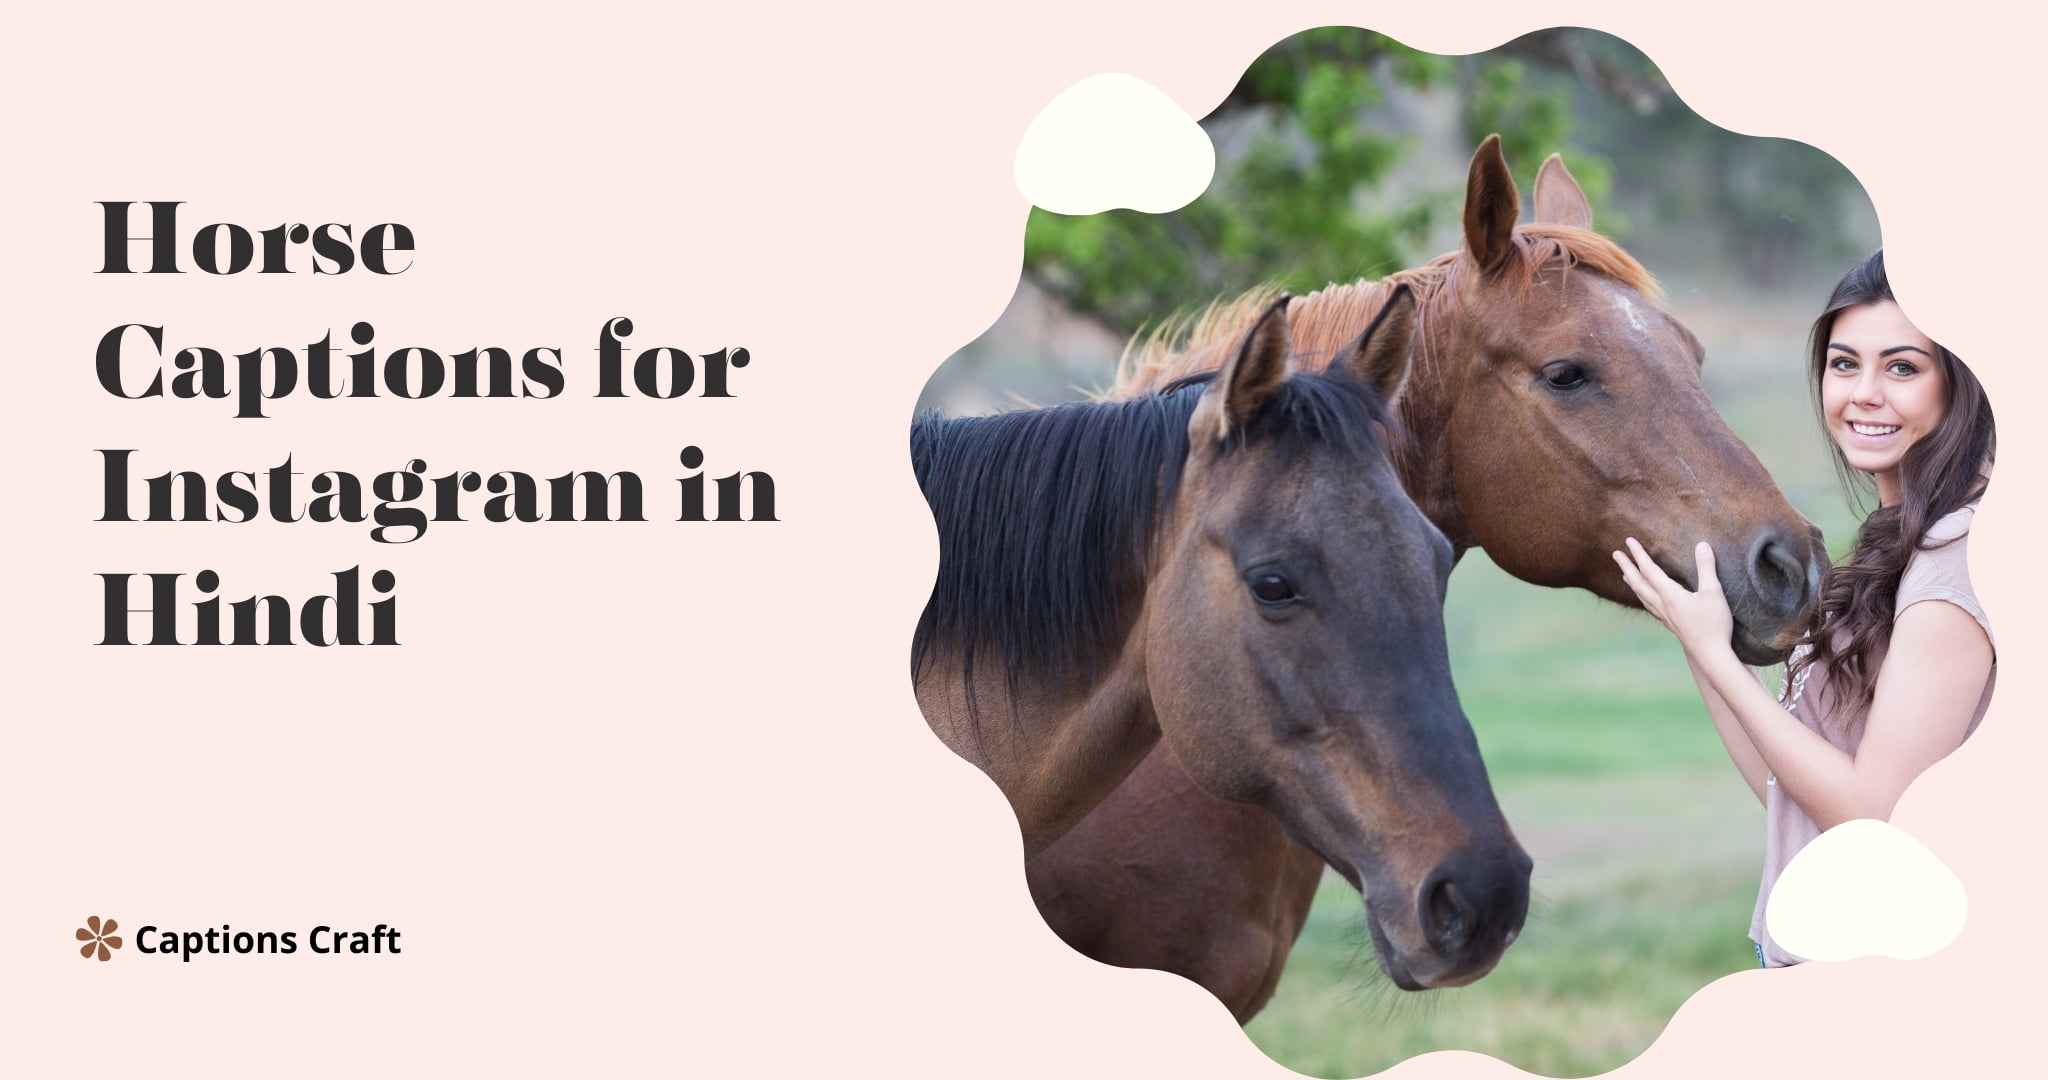 Horse captions for Instagram in Hindi: "इंस्टाग्राम के लिए हिंदी में घोड़े के कैप्शन।"